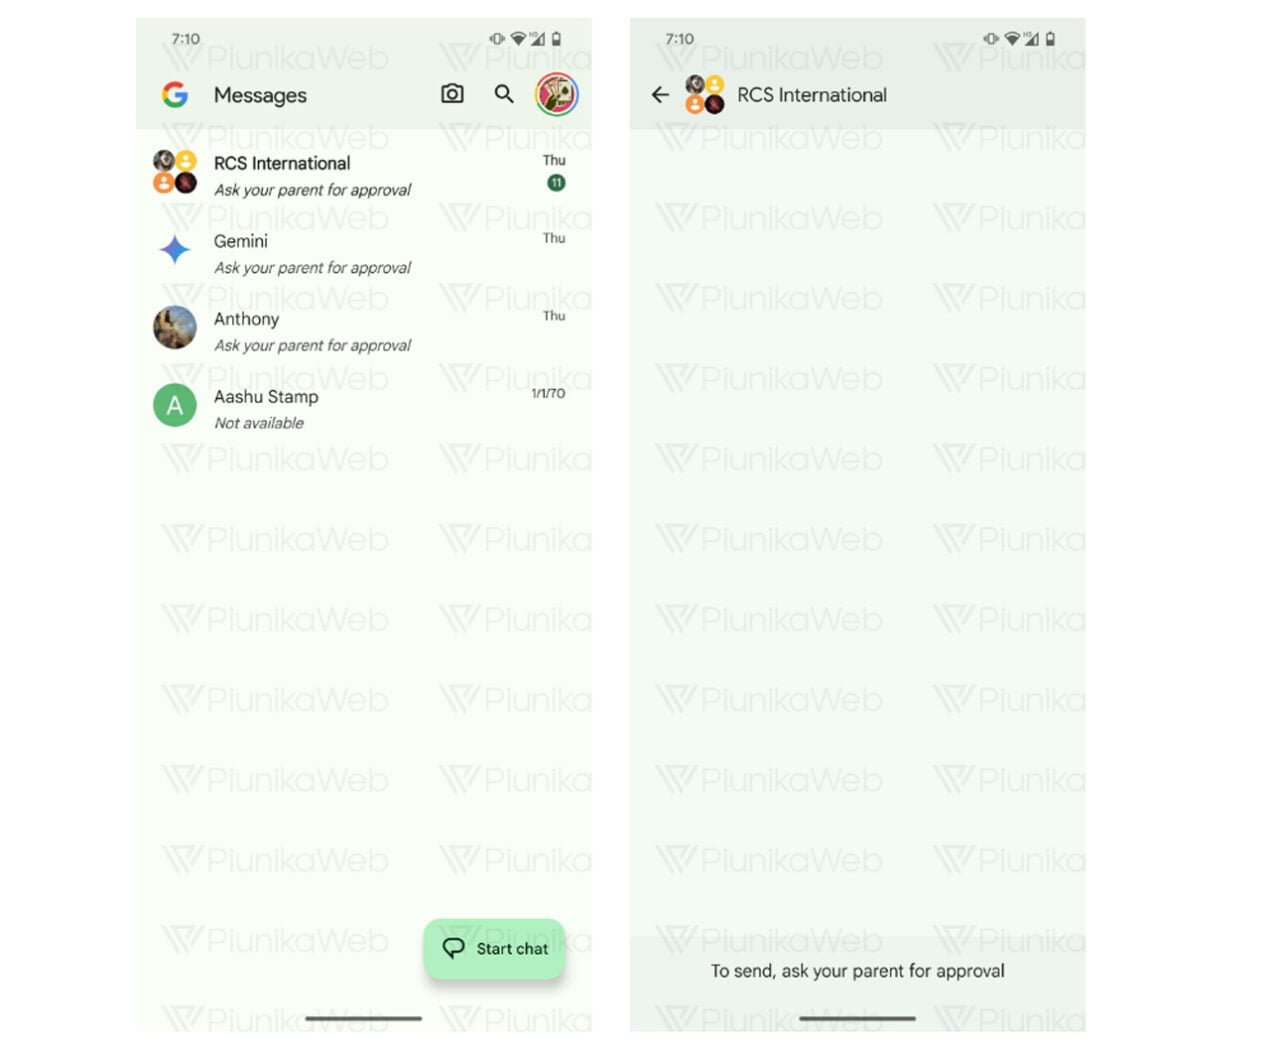 Zrzut ekranu aplikacji wiadomości Google z wiadomościami wymagającymi zatwierdzenia przez rodzica oraz aktywnym czatem z wiadomością "To send, ask your parent for approval".